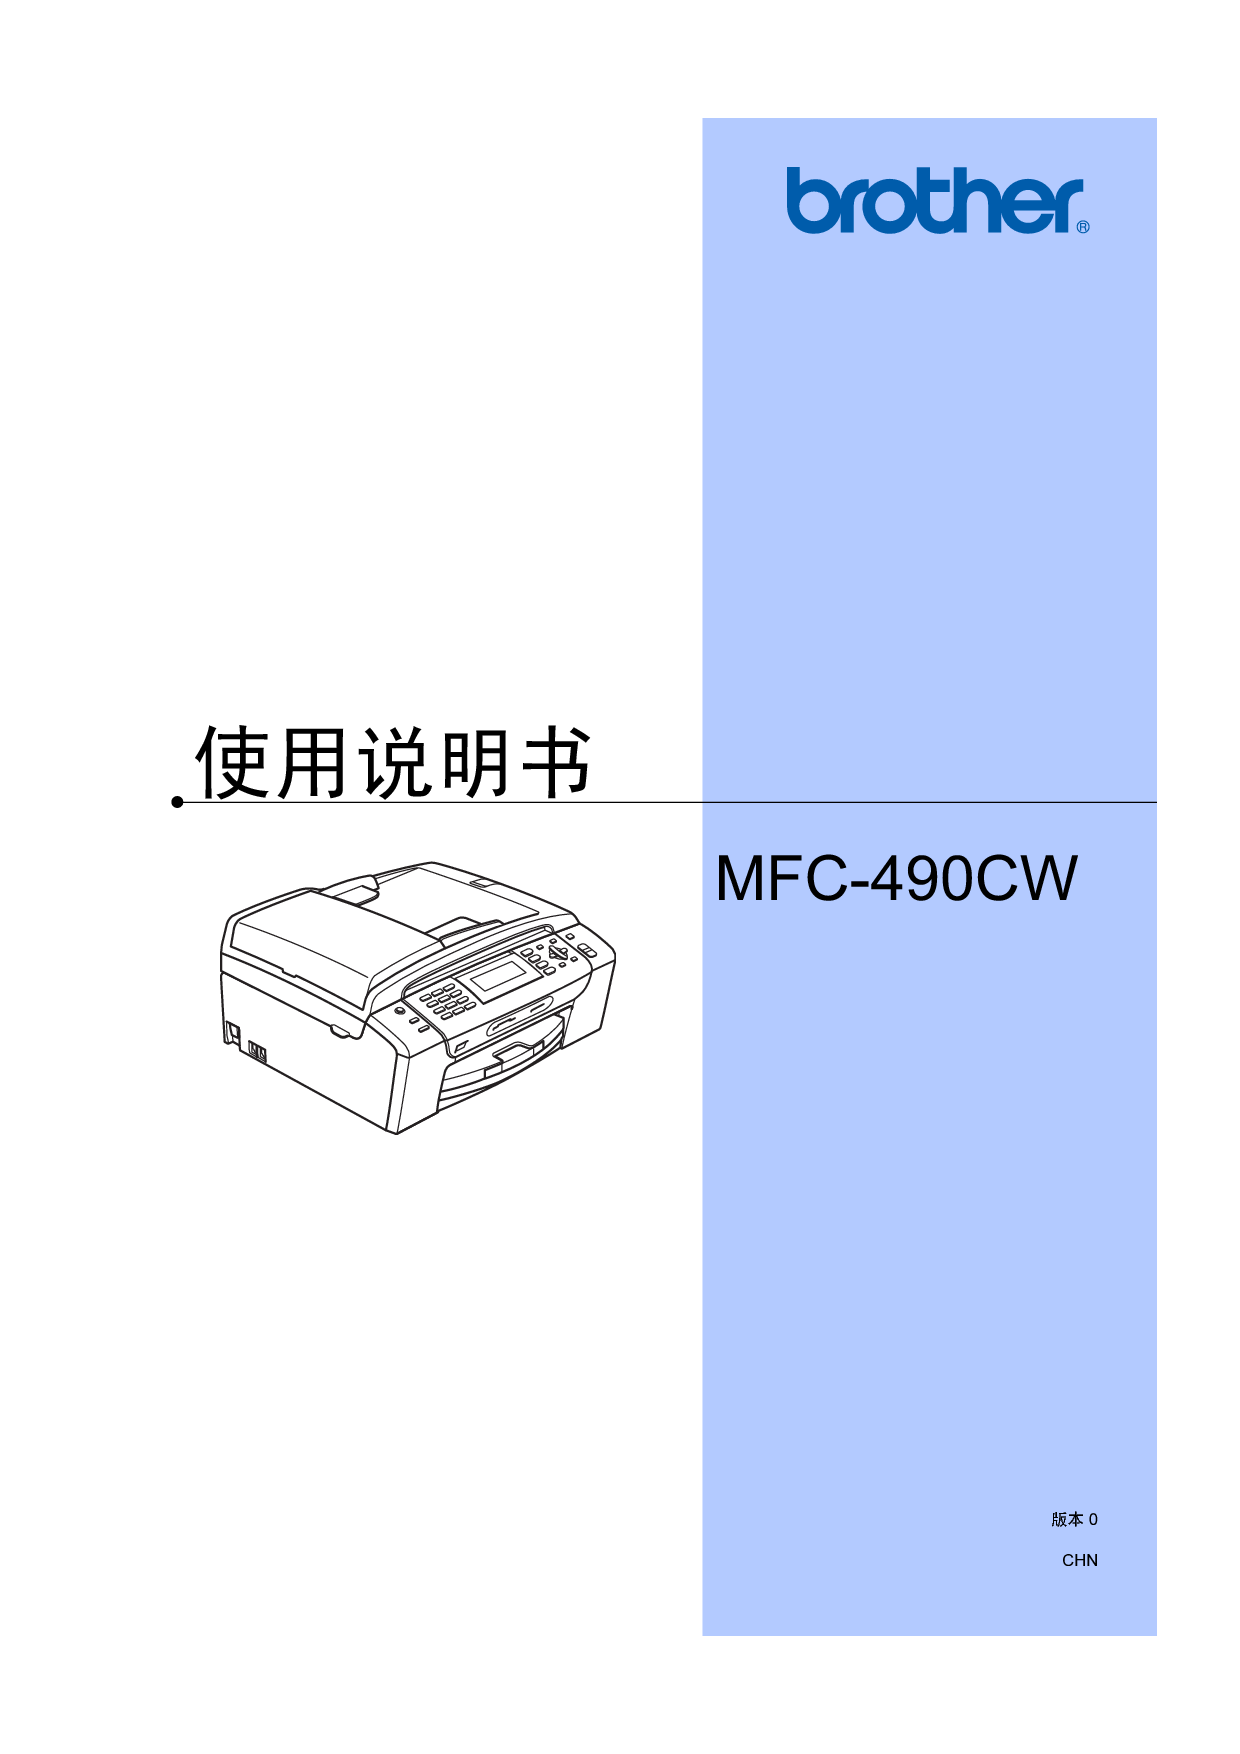 兄弟 Brother MFC-490CW 使用说明书 封面